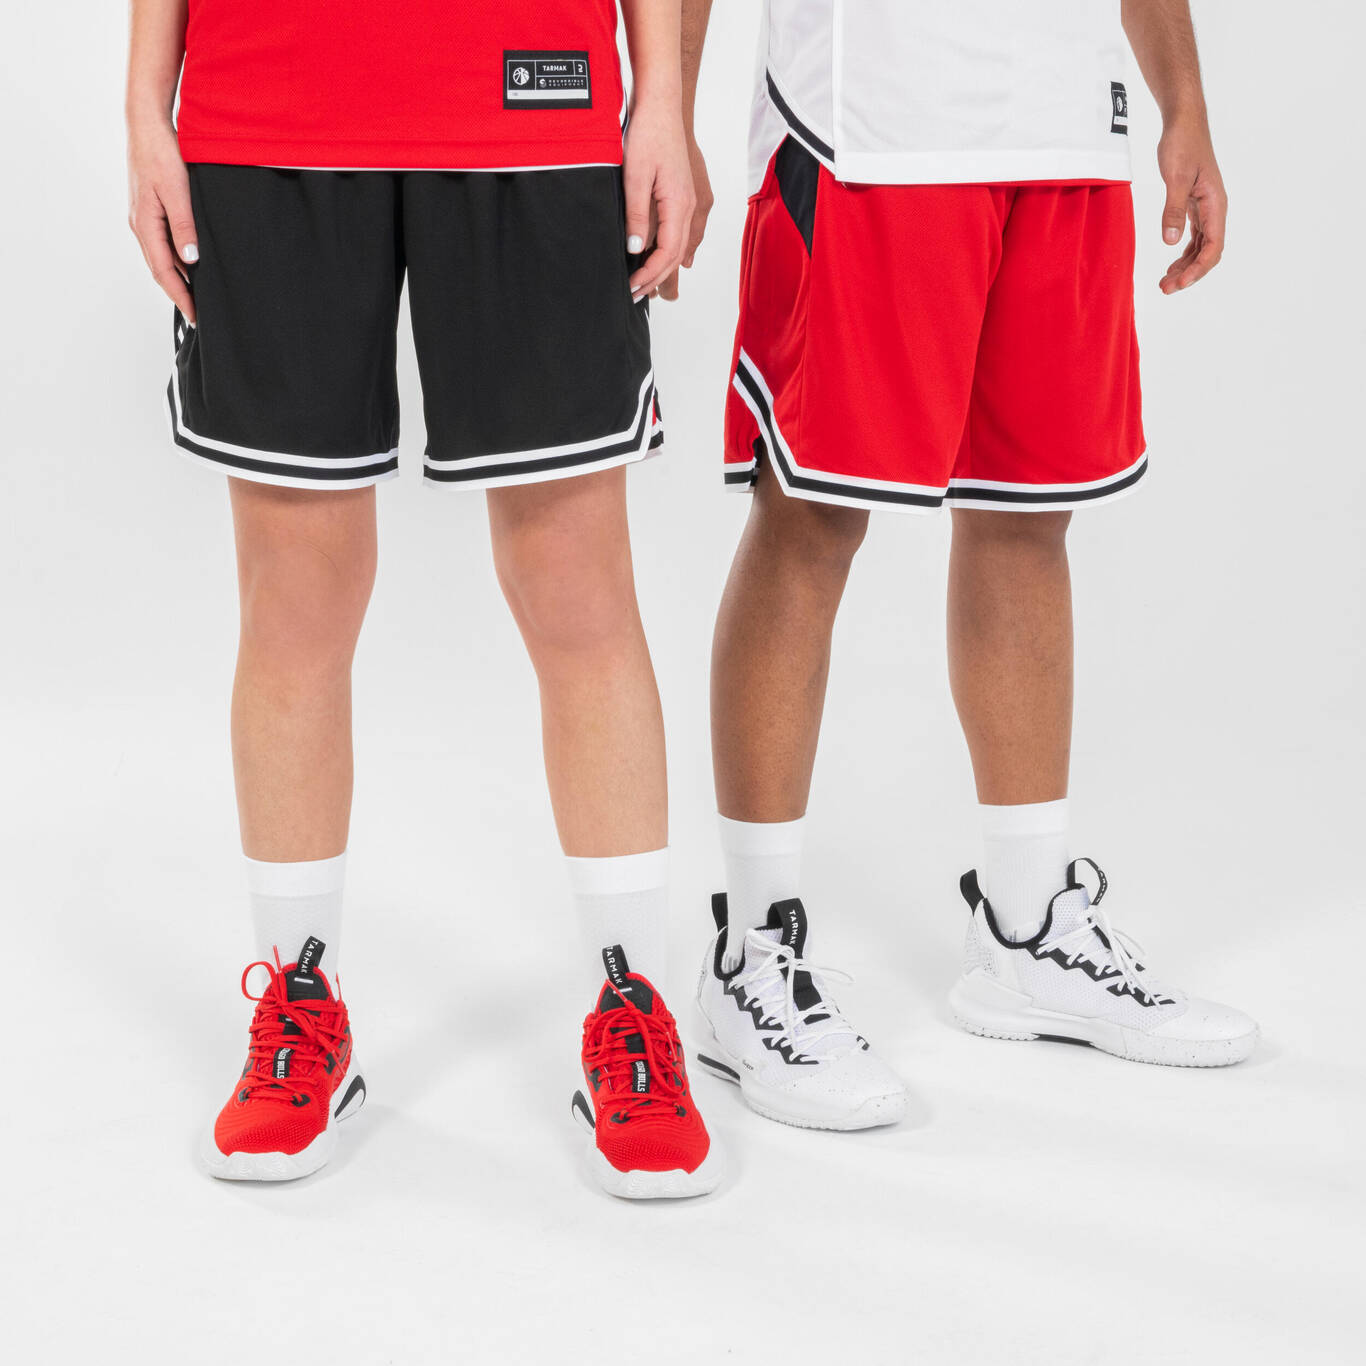 Men's/Women's Basketball Reversible Shorts SH500R - Black/Red - Decathlon